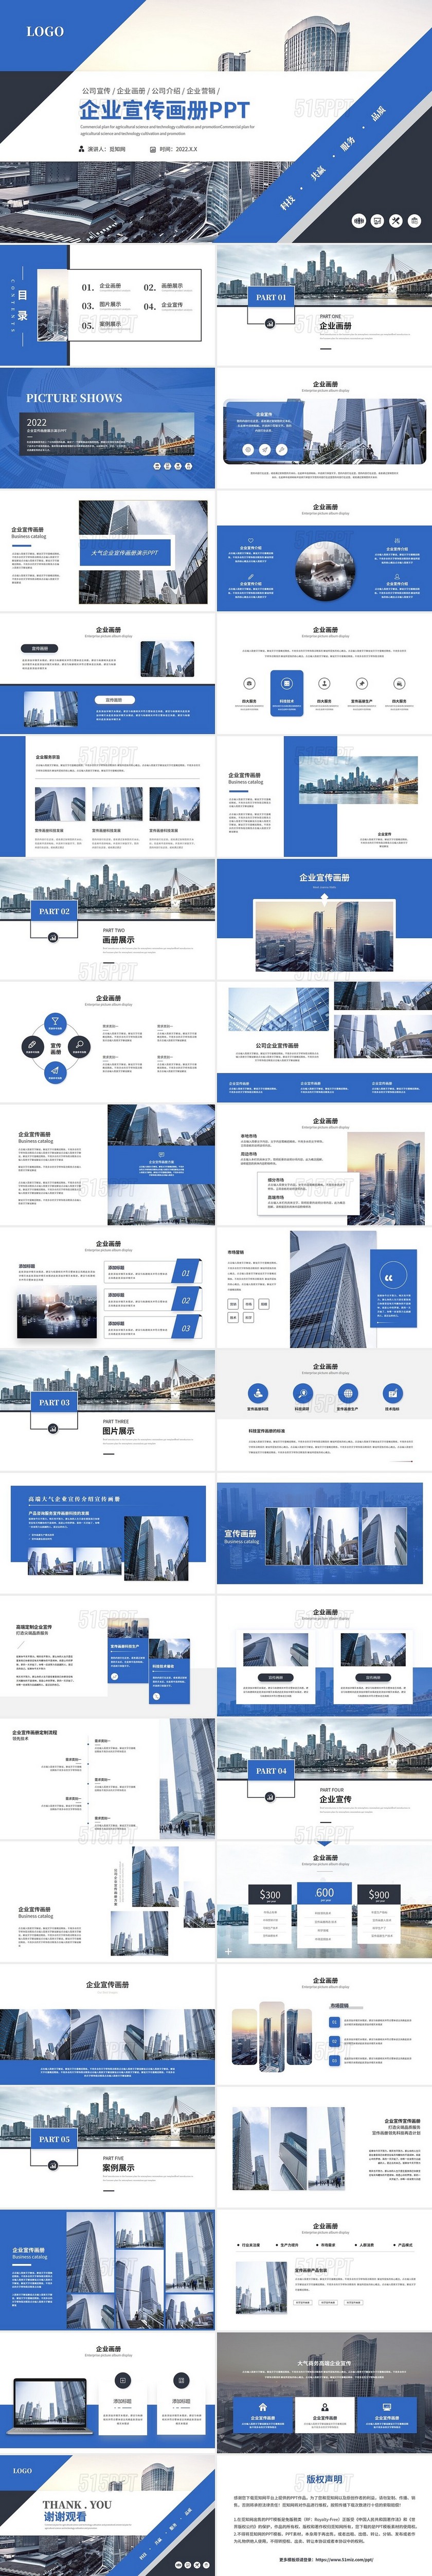 蓝色几何商务企业宣传画册公司介绍企业介绍产品宣传ppt模板图片展示